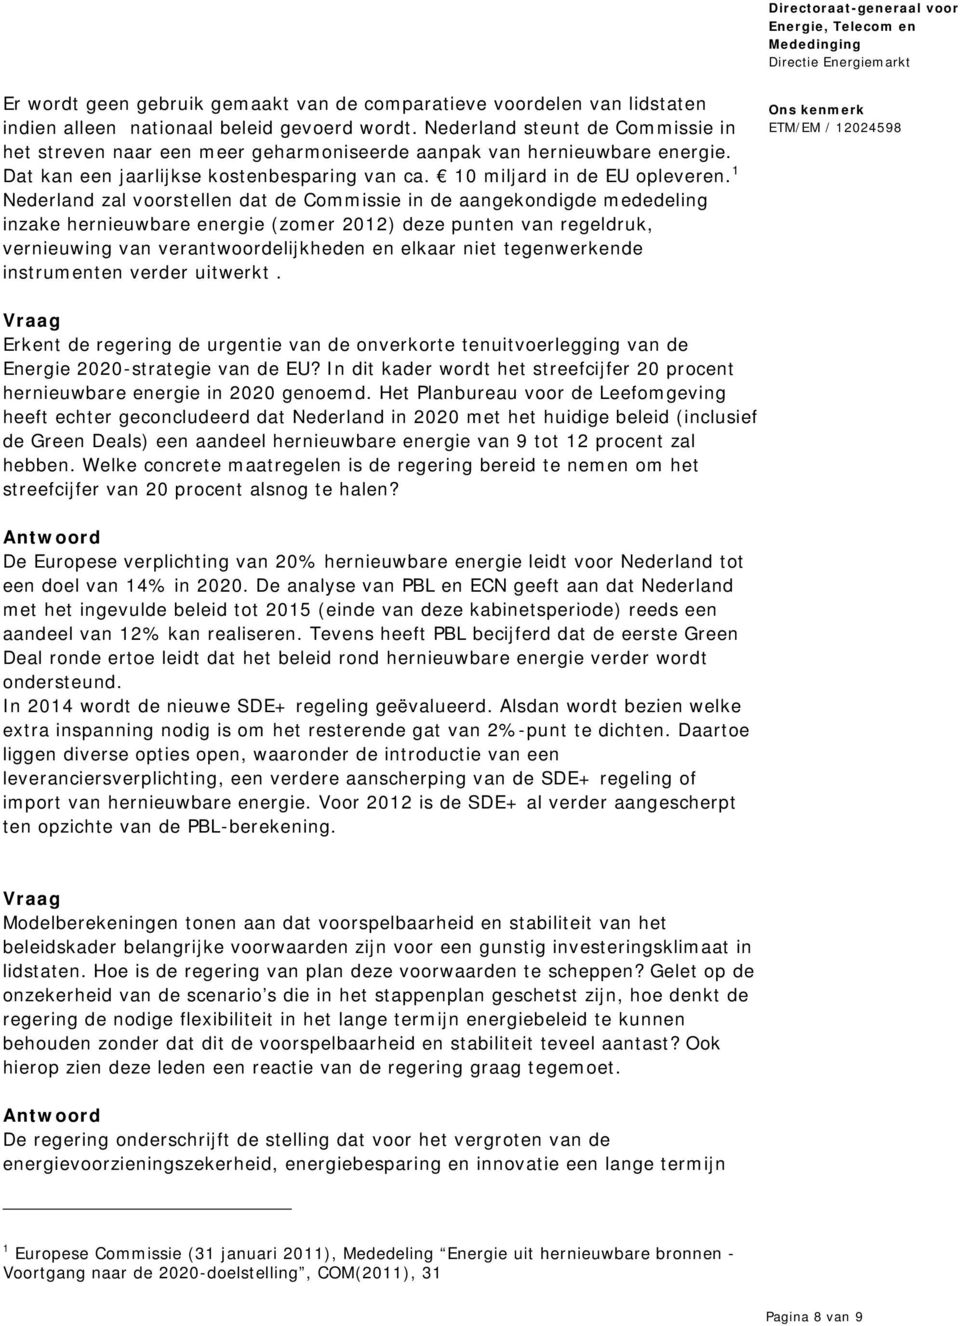 1 Nederland zal voorstellen dat de Commissie in de aangekondigde mededeling inzake hernieuwbare energie (zomer 2012) deze punten van regeldruk, vernieuwing van verantwoordelijkheden en elkaar niet